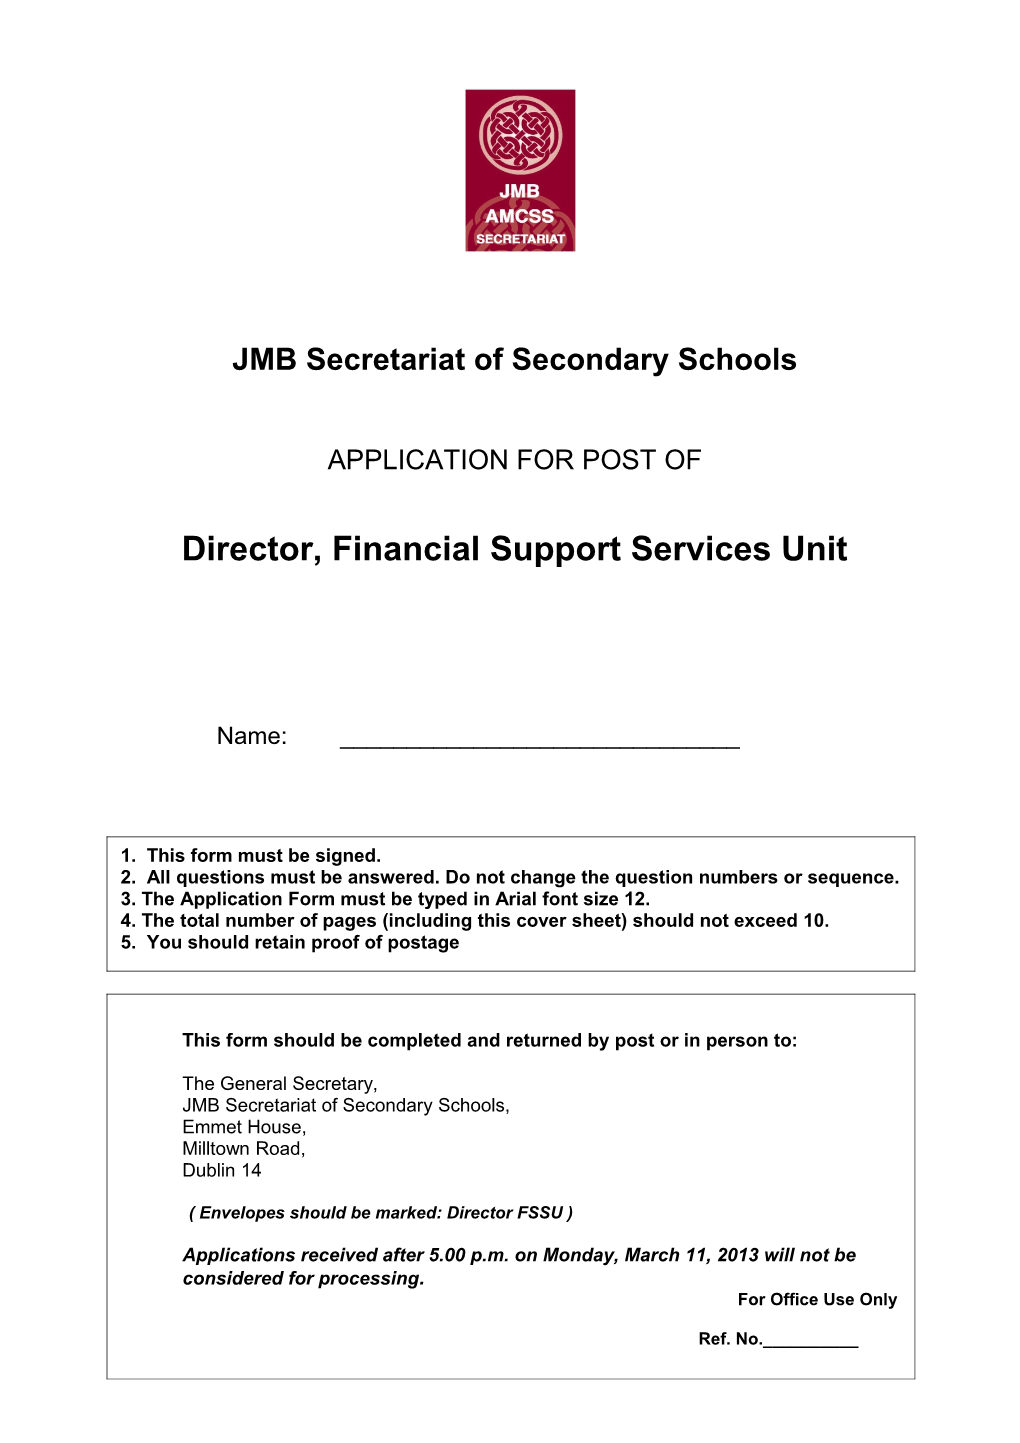 JMB Secretariat of Secondary Schools